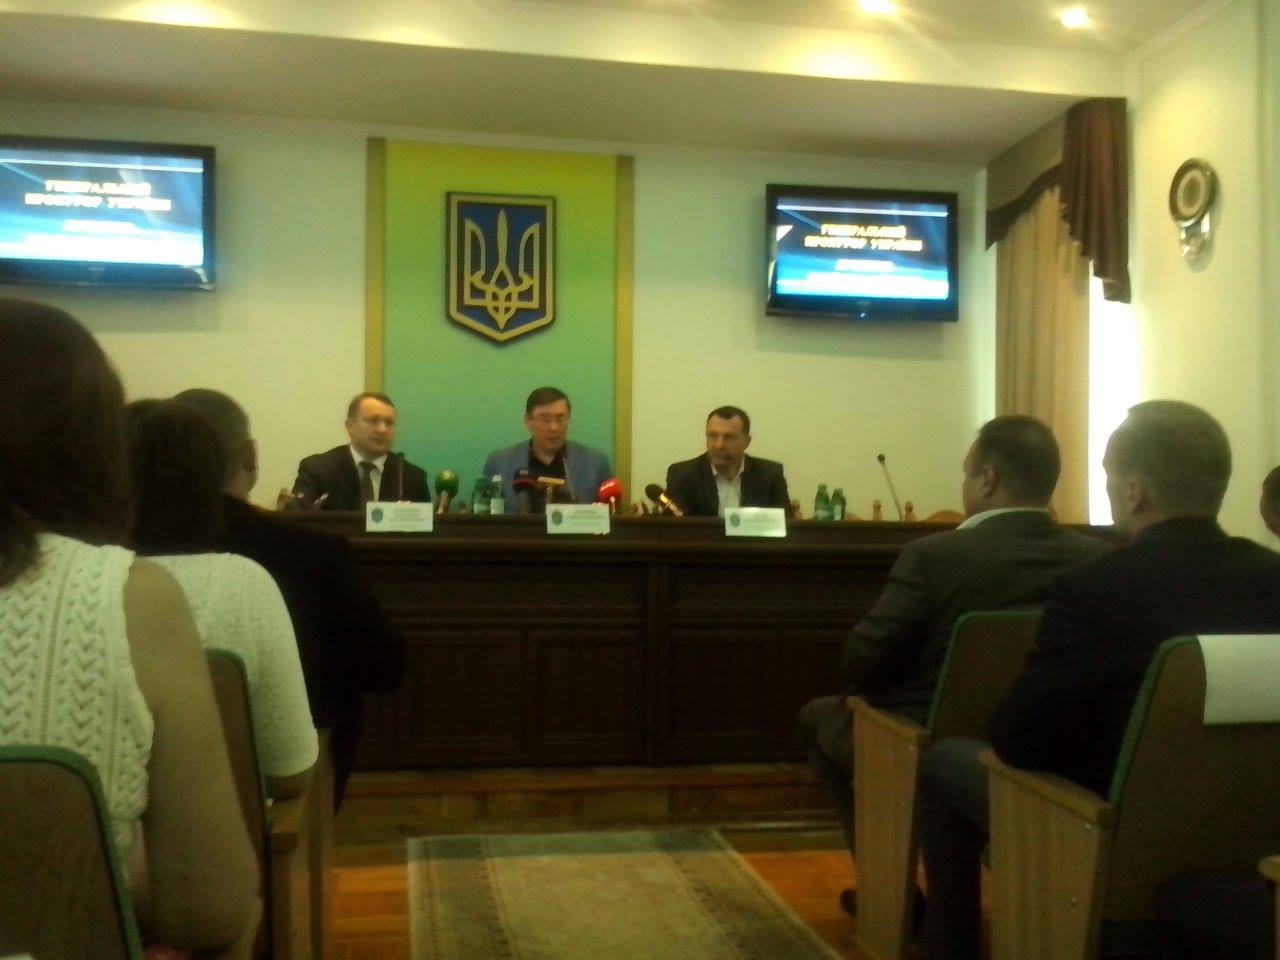 Луценко представил нового прокурора Черниговской области